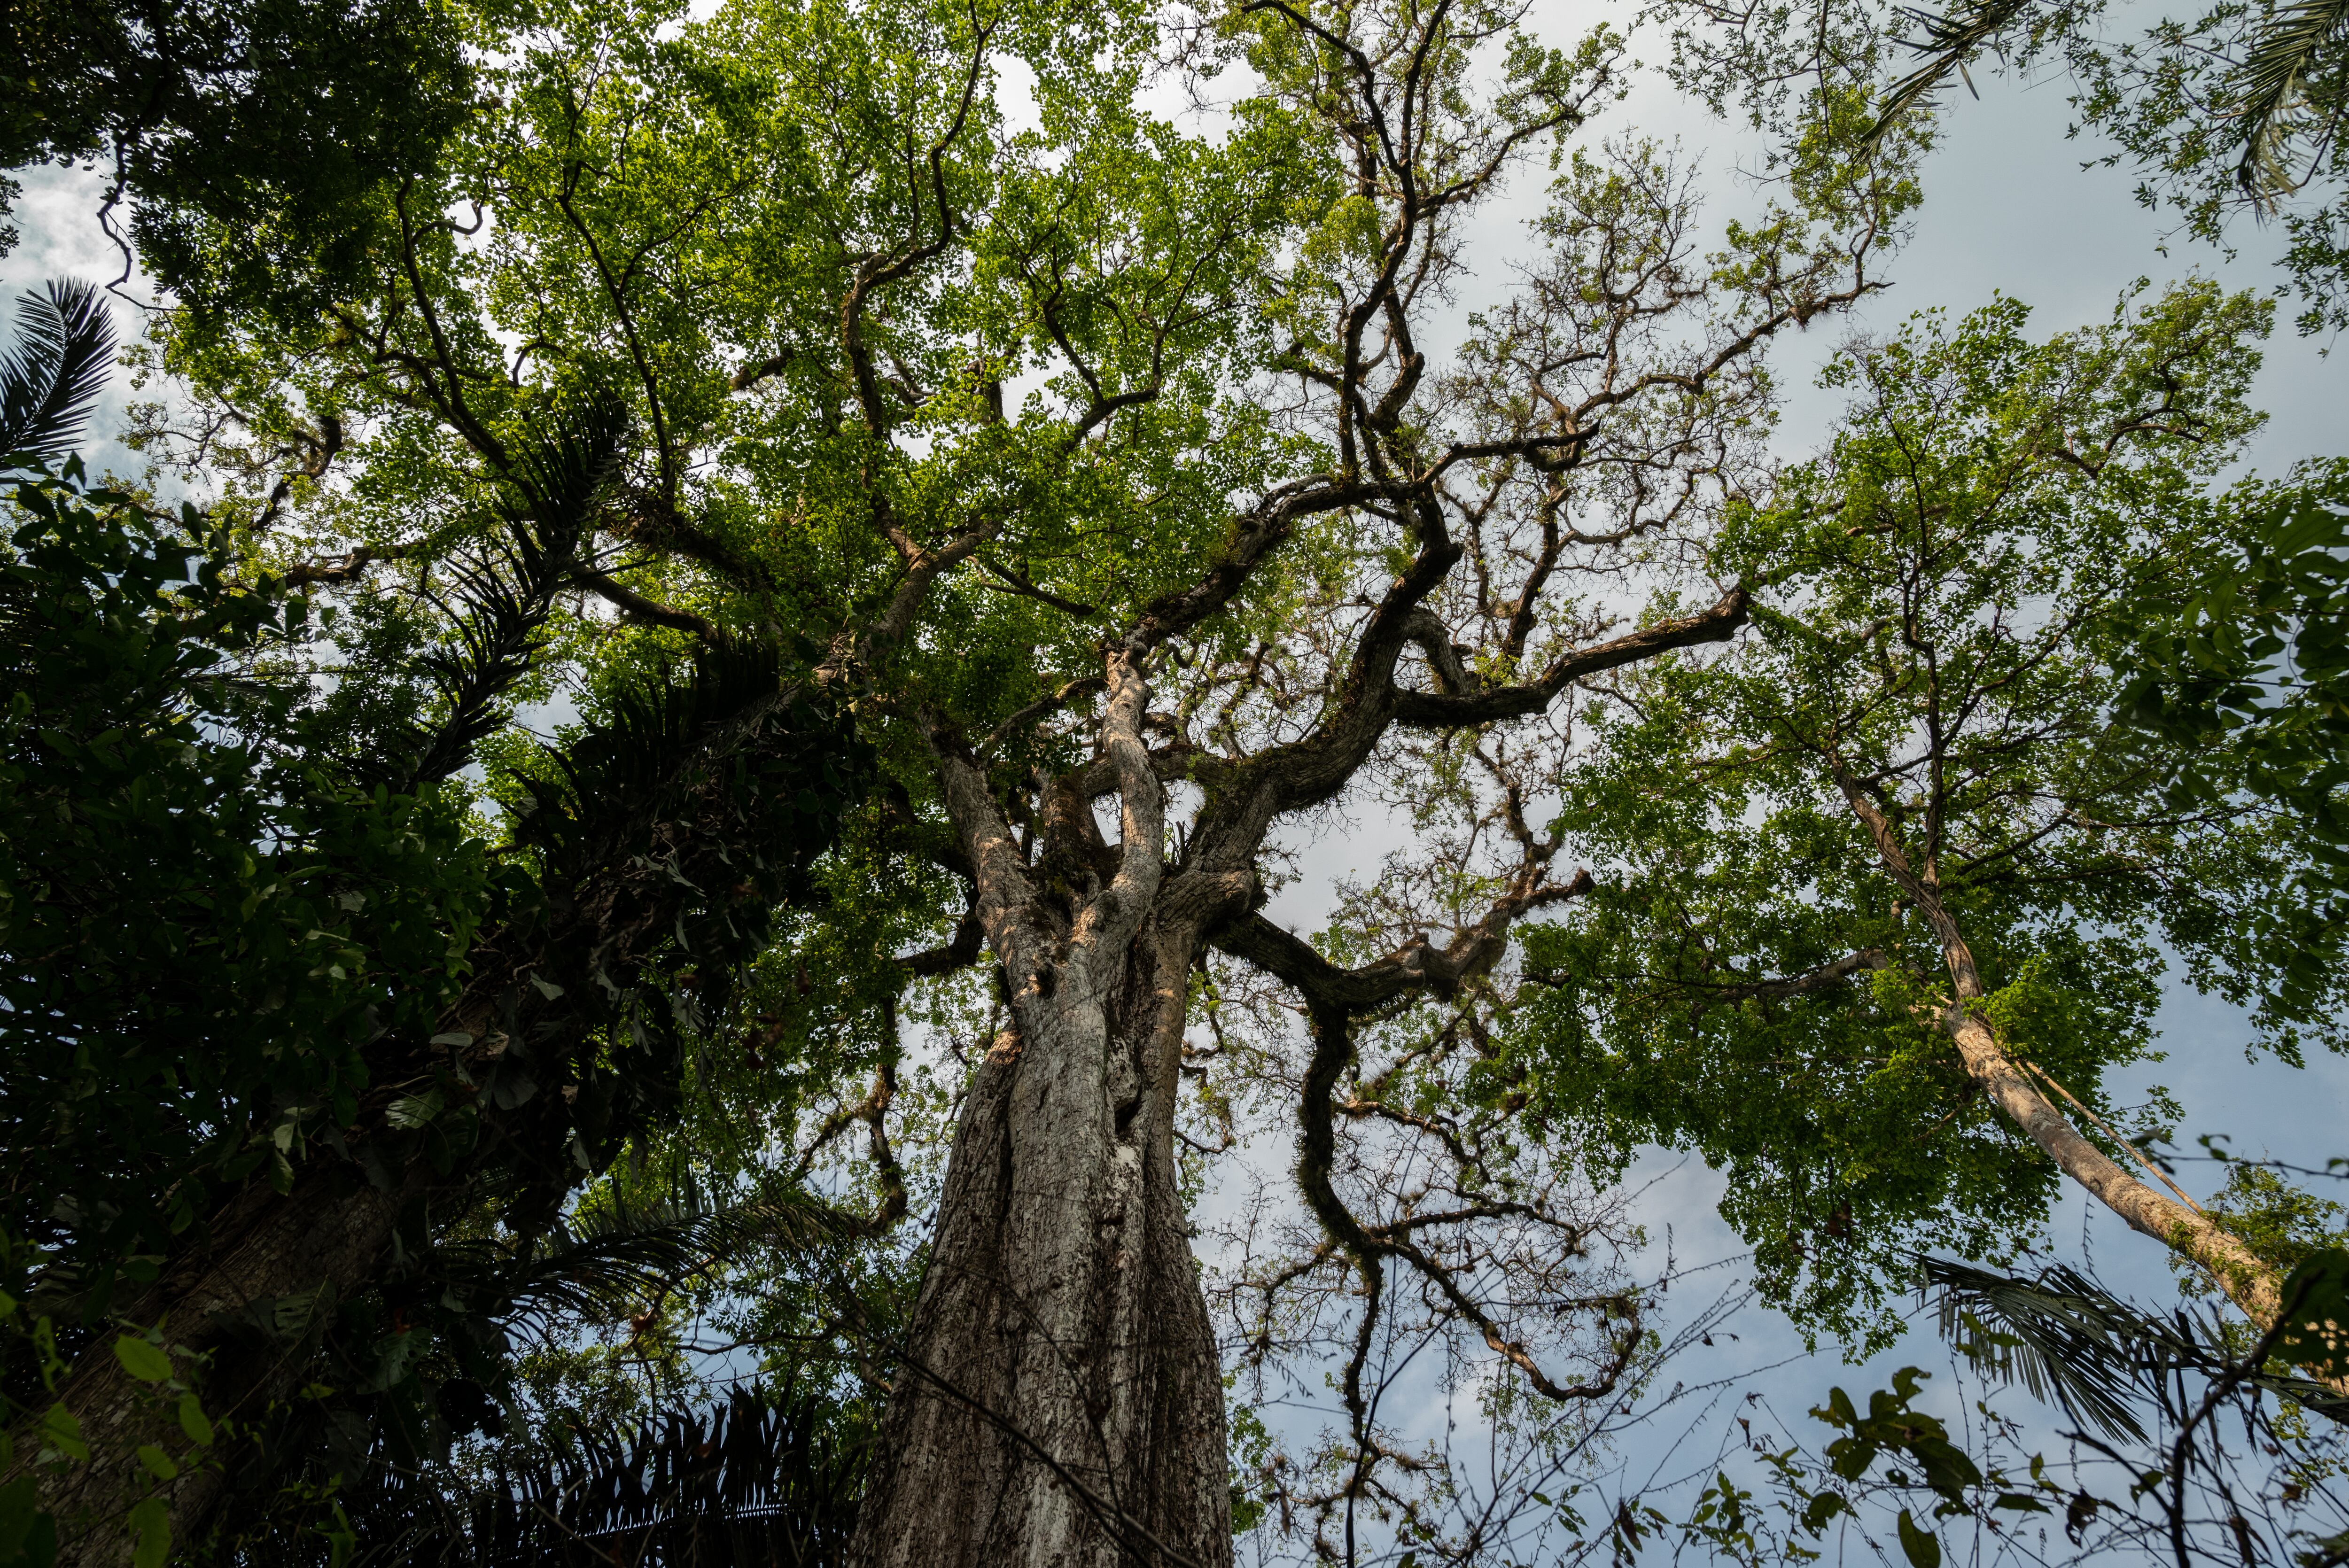 Un árbol llamado 'El abuelo' es uno de los árboles más grandes que existe en el interior de la Reserva.